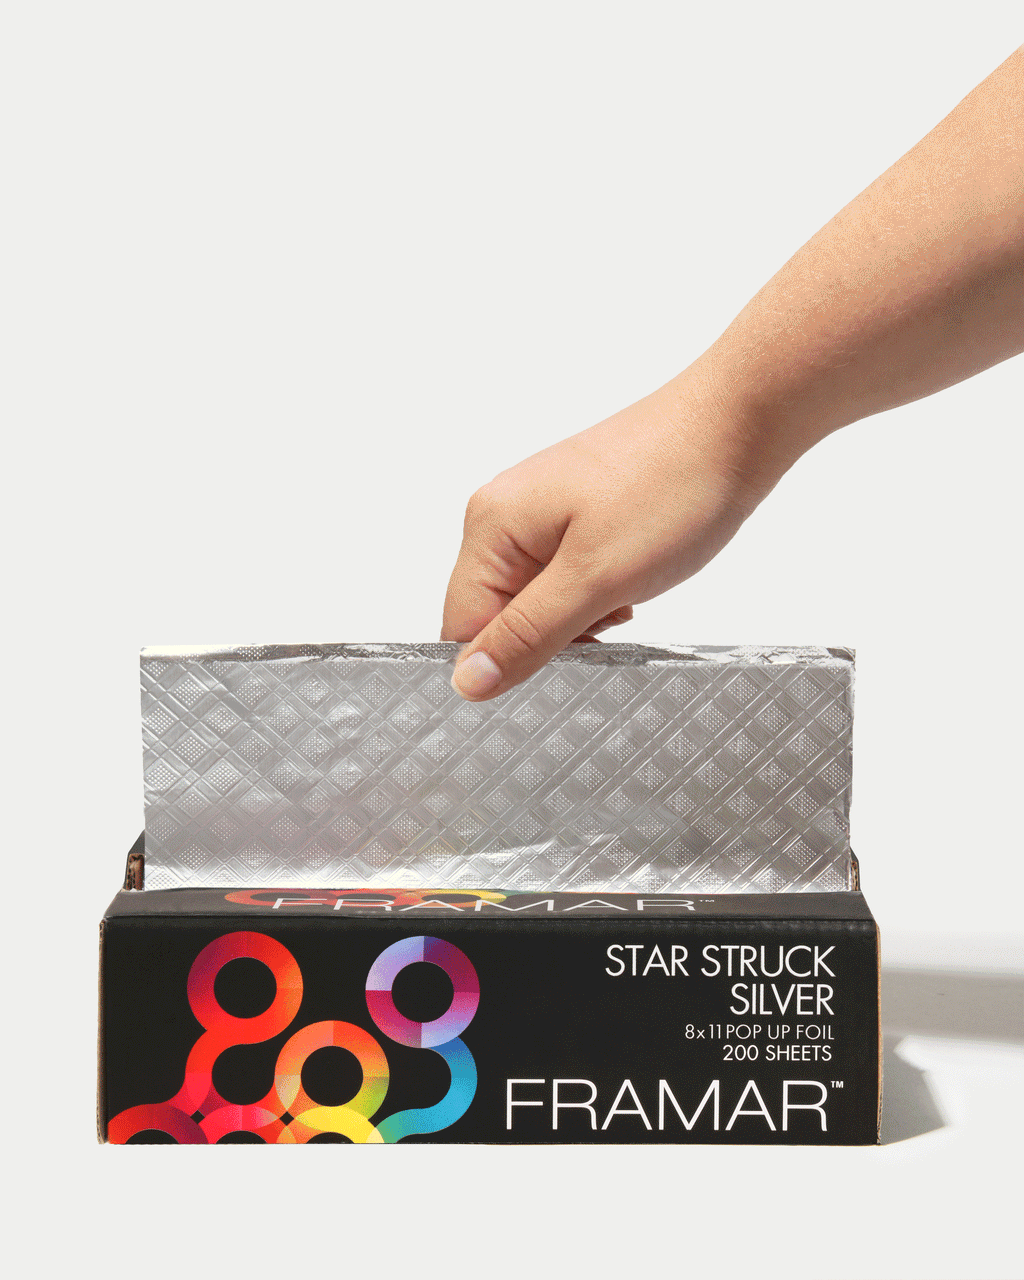 Framar Star Struck Silver 5x11 Pop Up Foil 500 Sheets